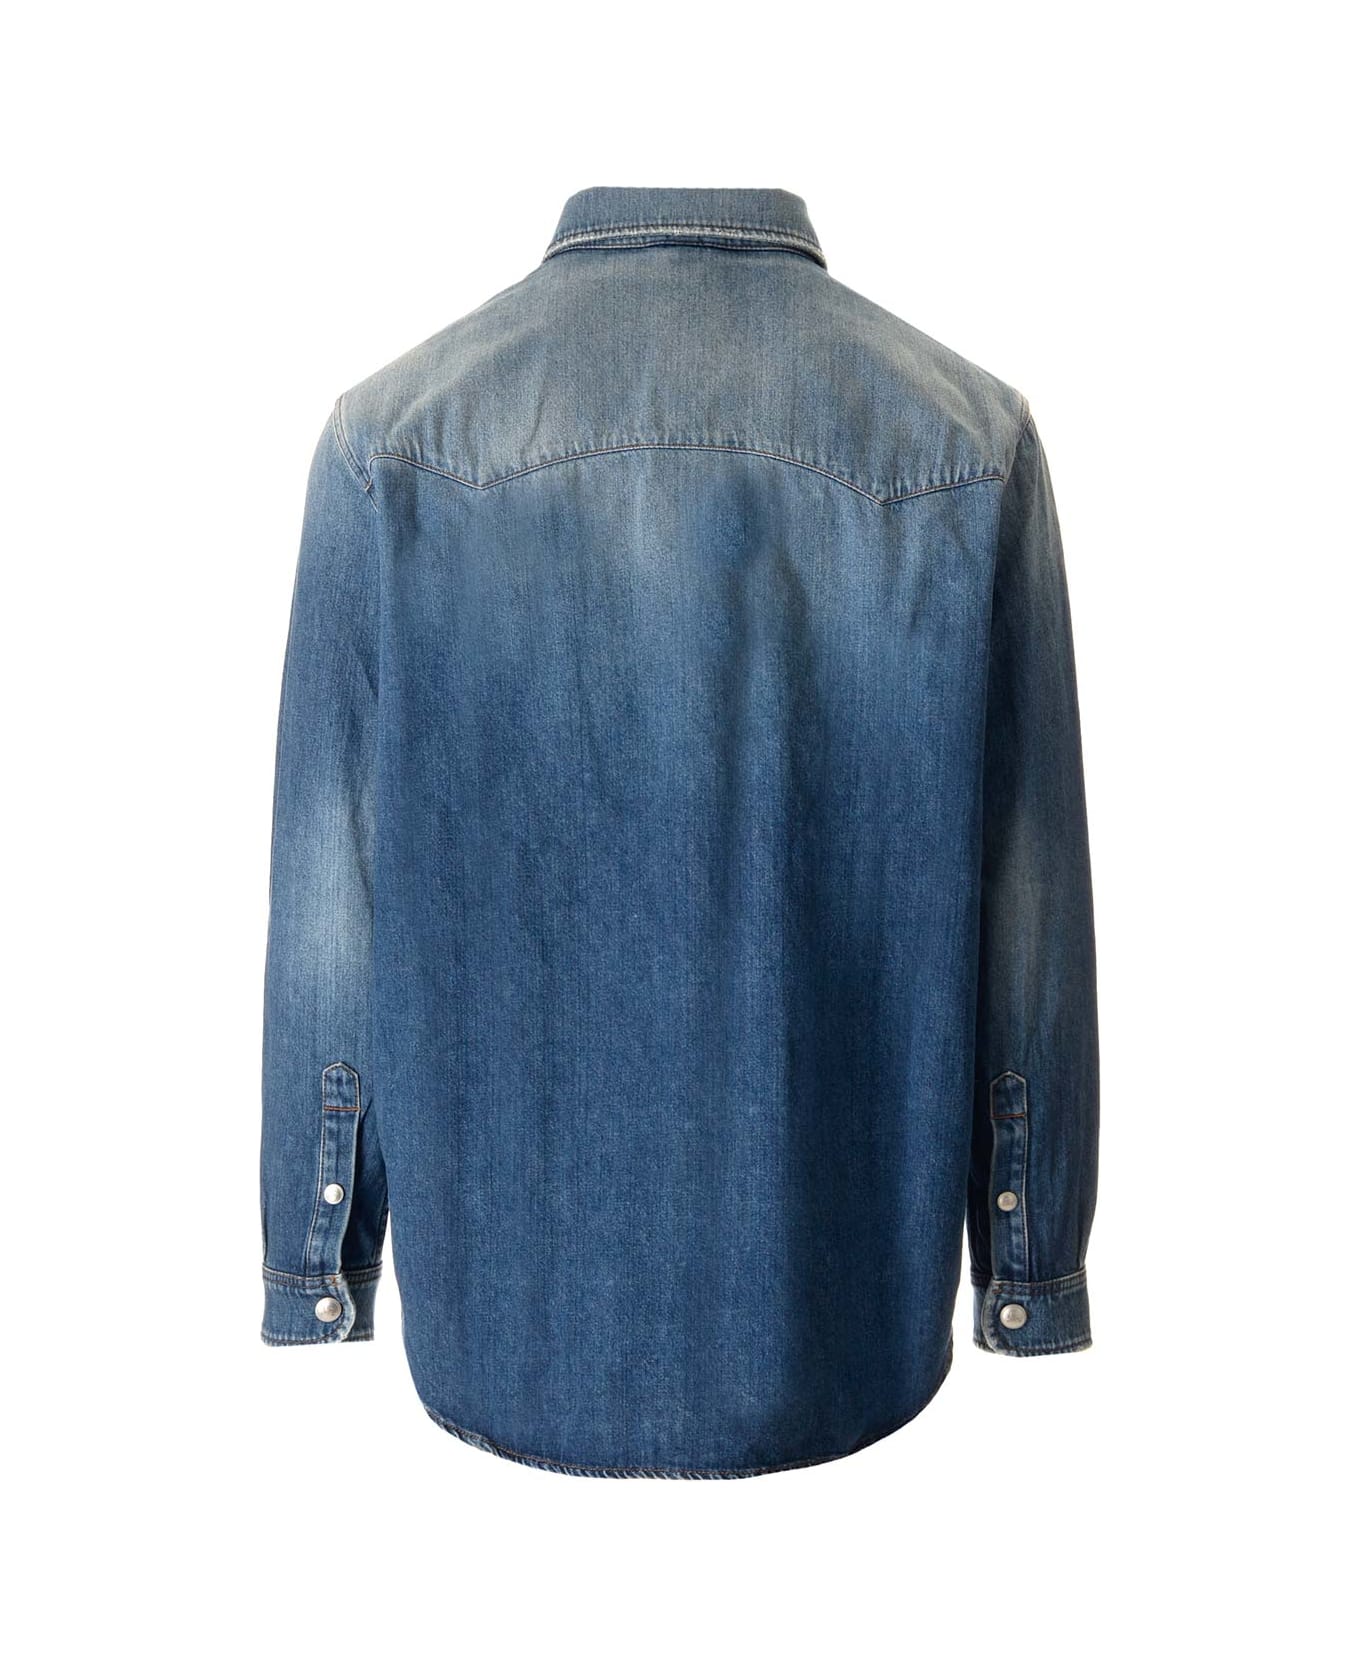 Burberry Denim Shirt With Pockets - Blue